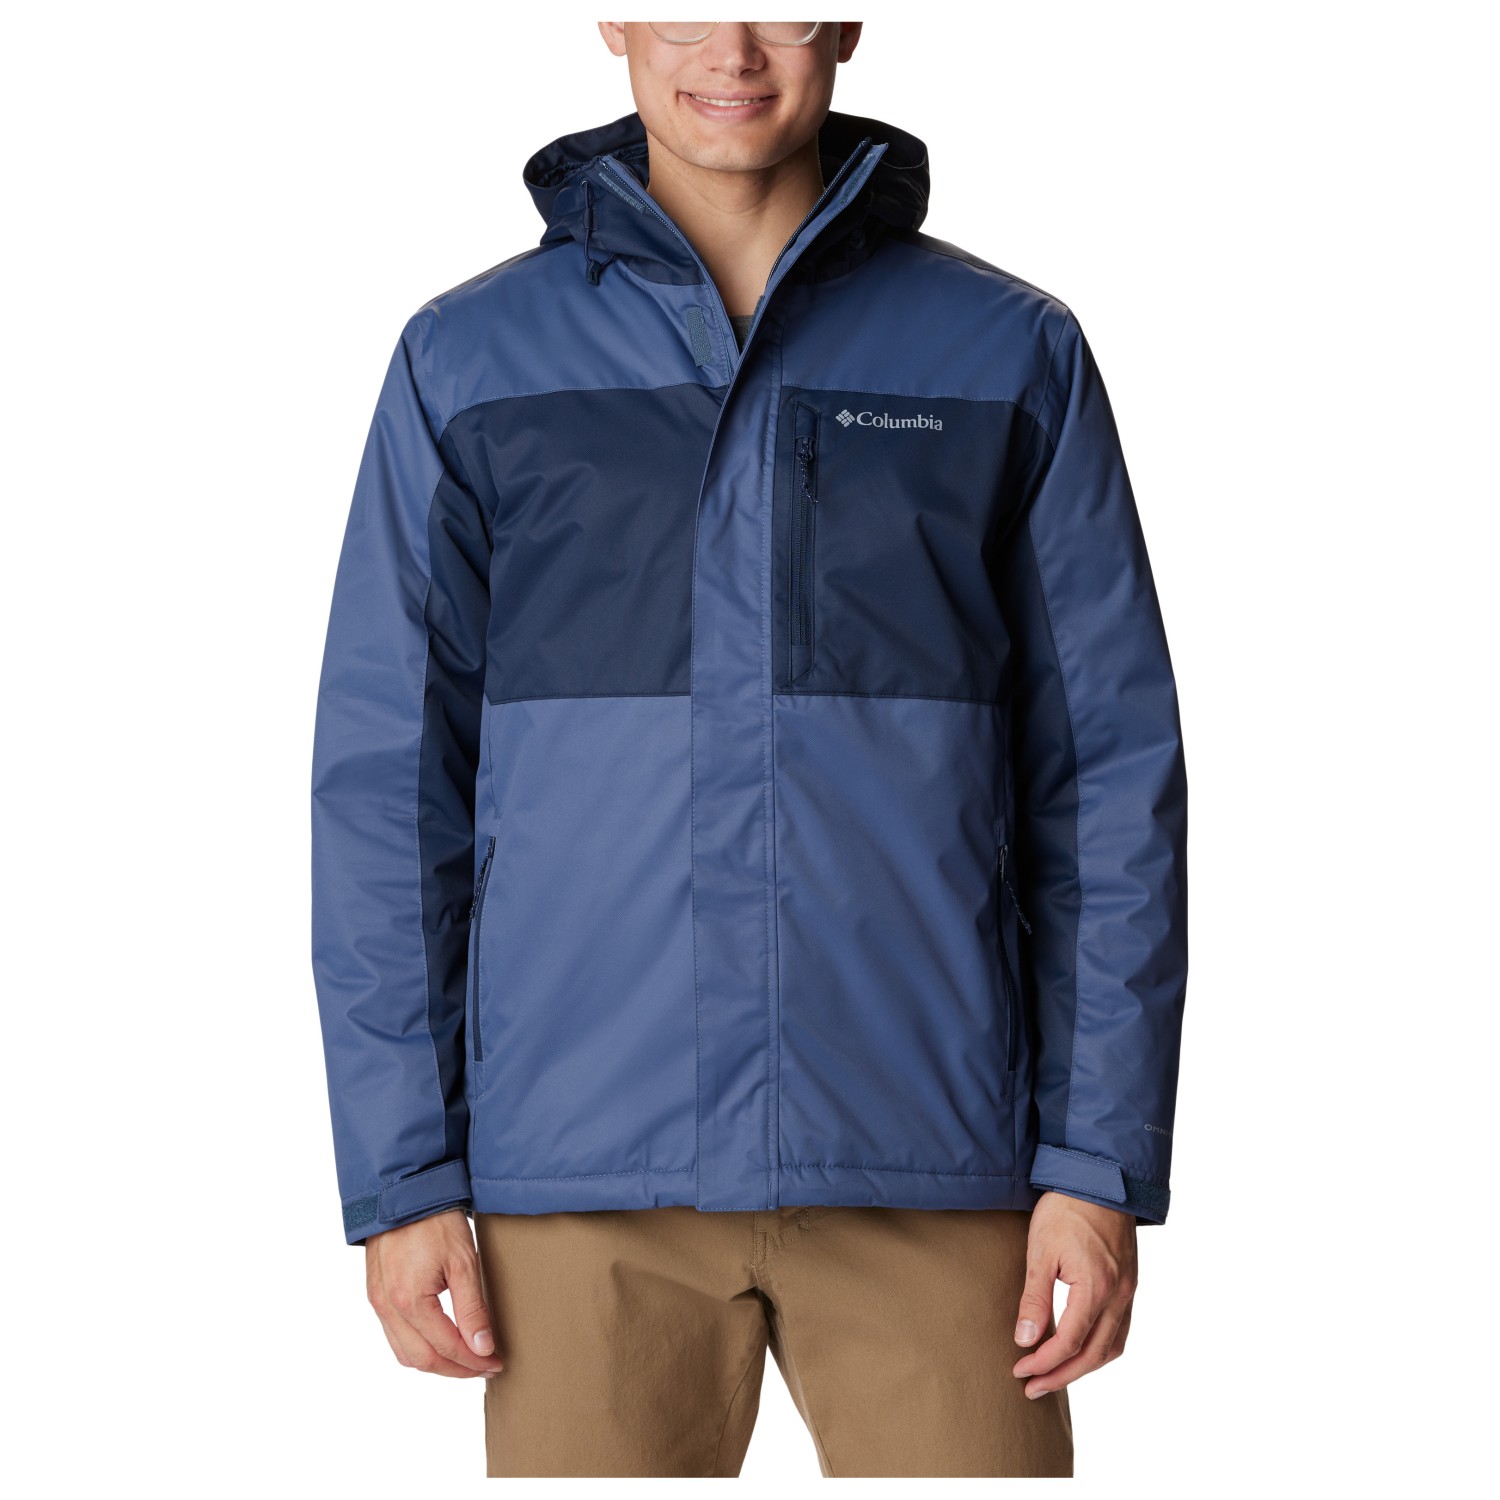 Зимняя куртка Columbia Tipton Peak II Insulated, цвет Dark Mountain/Collegiate Navy куртка утепленная женская columbia suttle mountain long insulated jacket синий размер 46